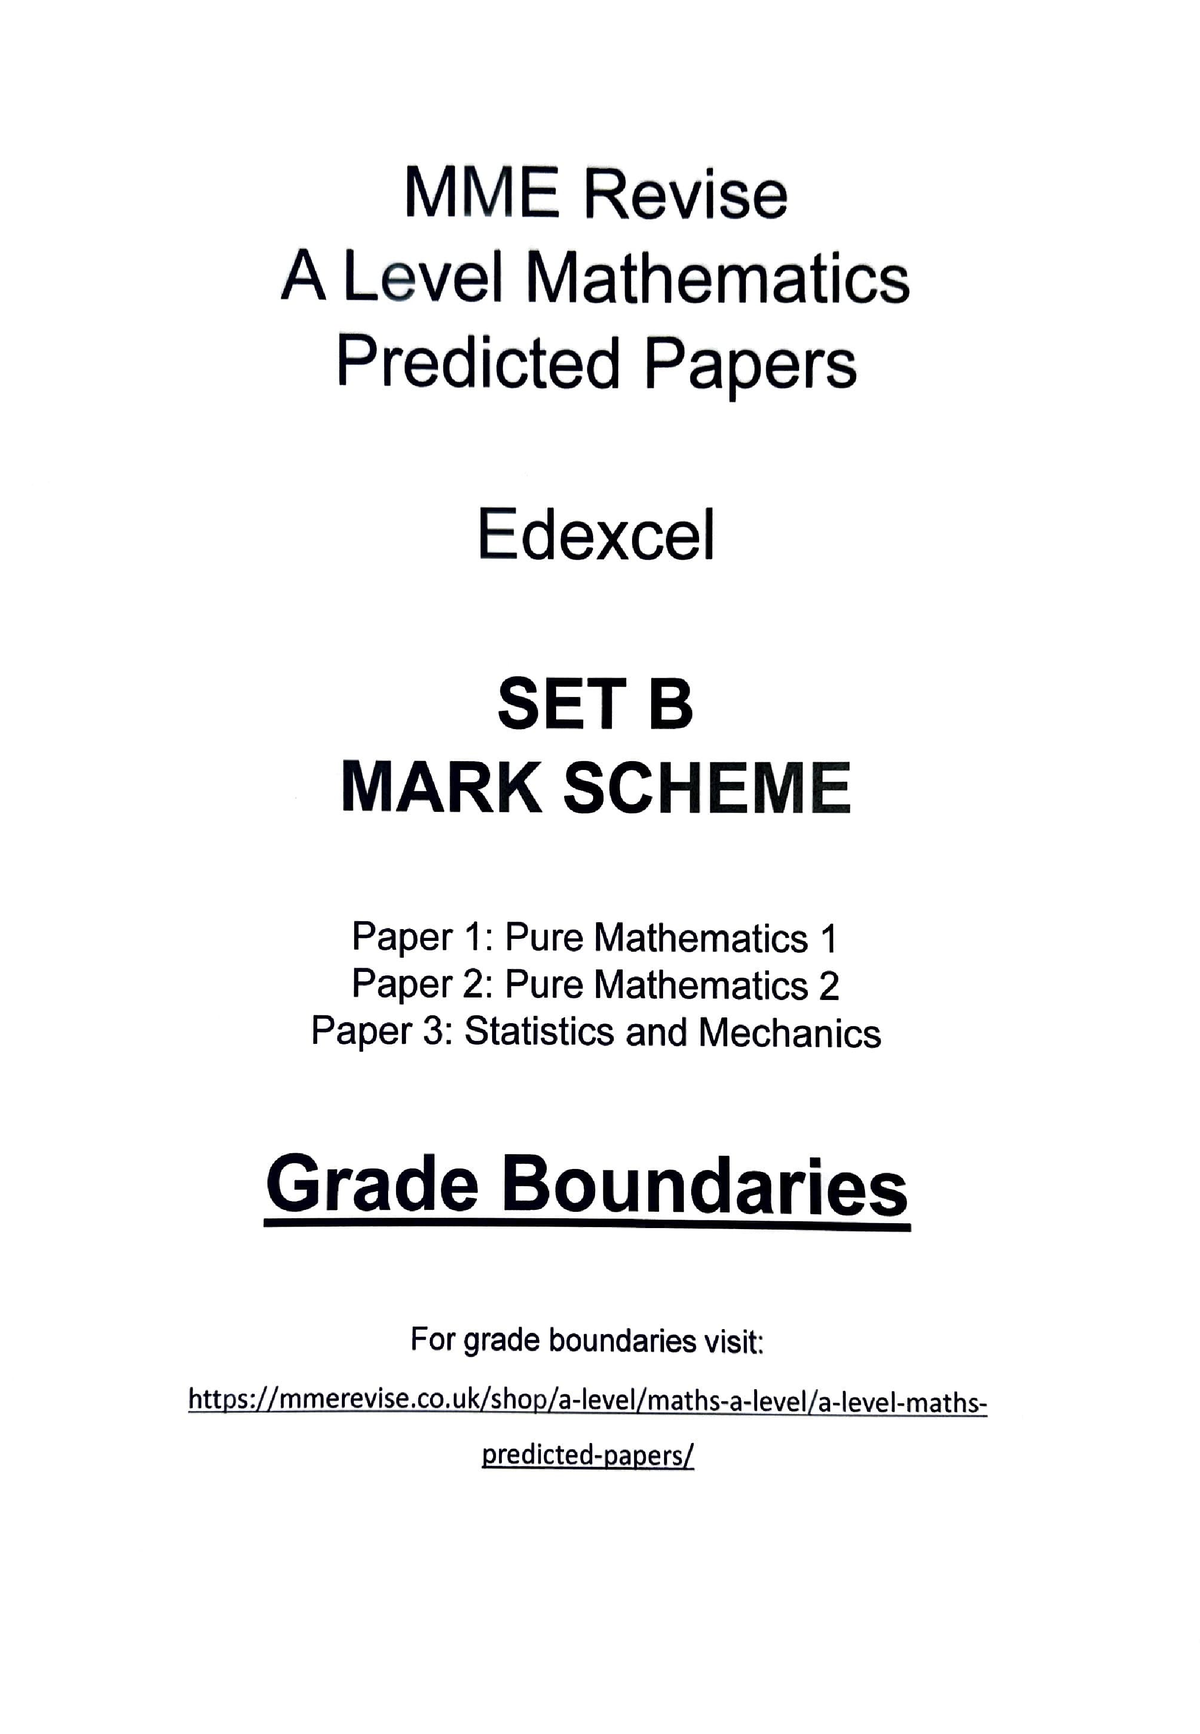 Edexcel Grade Boundaries All AS A2 Level Exams 2009, PDF